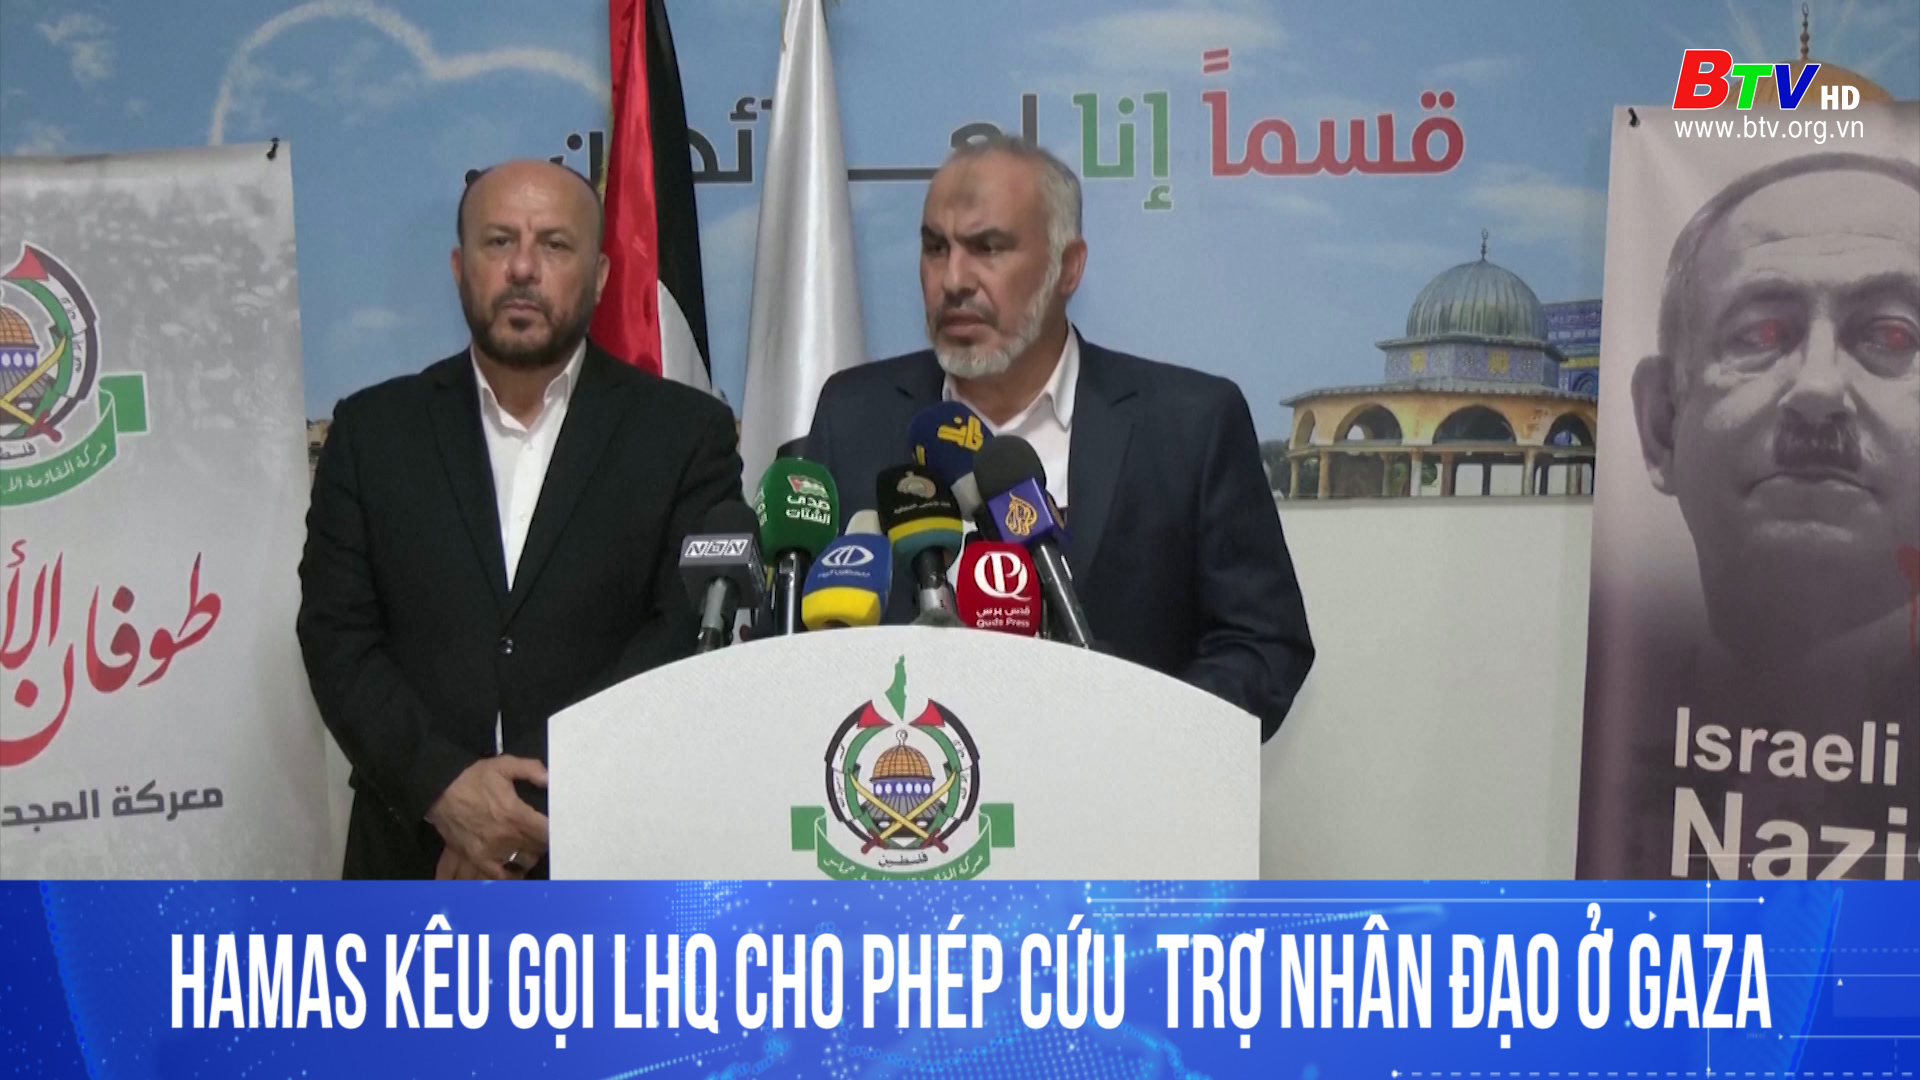 Hamas kêu gọi LHQ cho phép cứu trợ nhân đạo Gaza